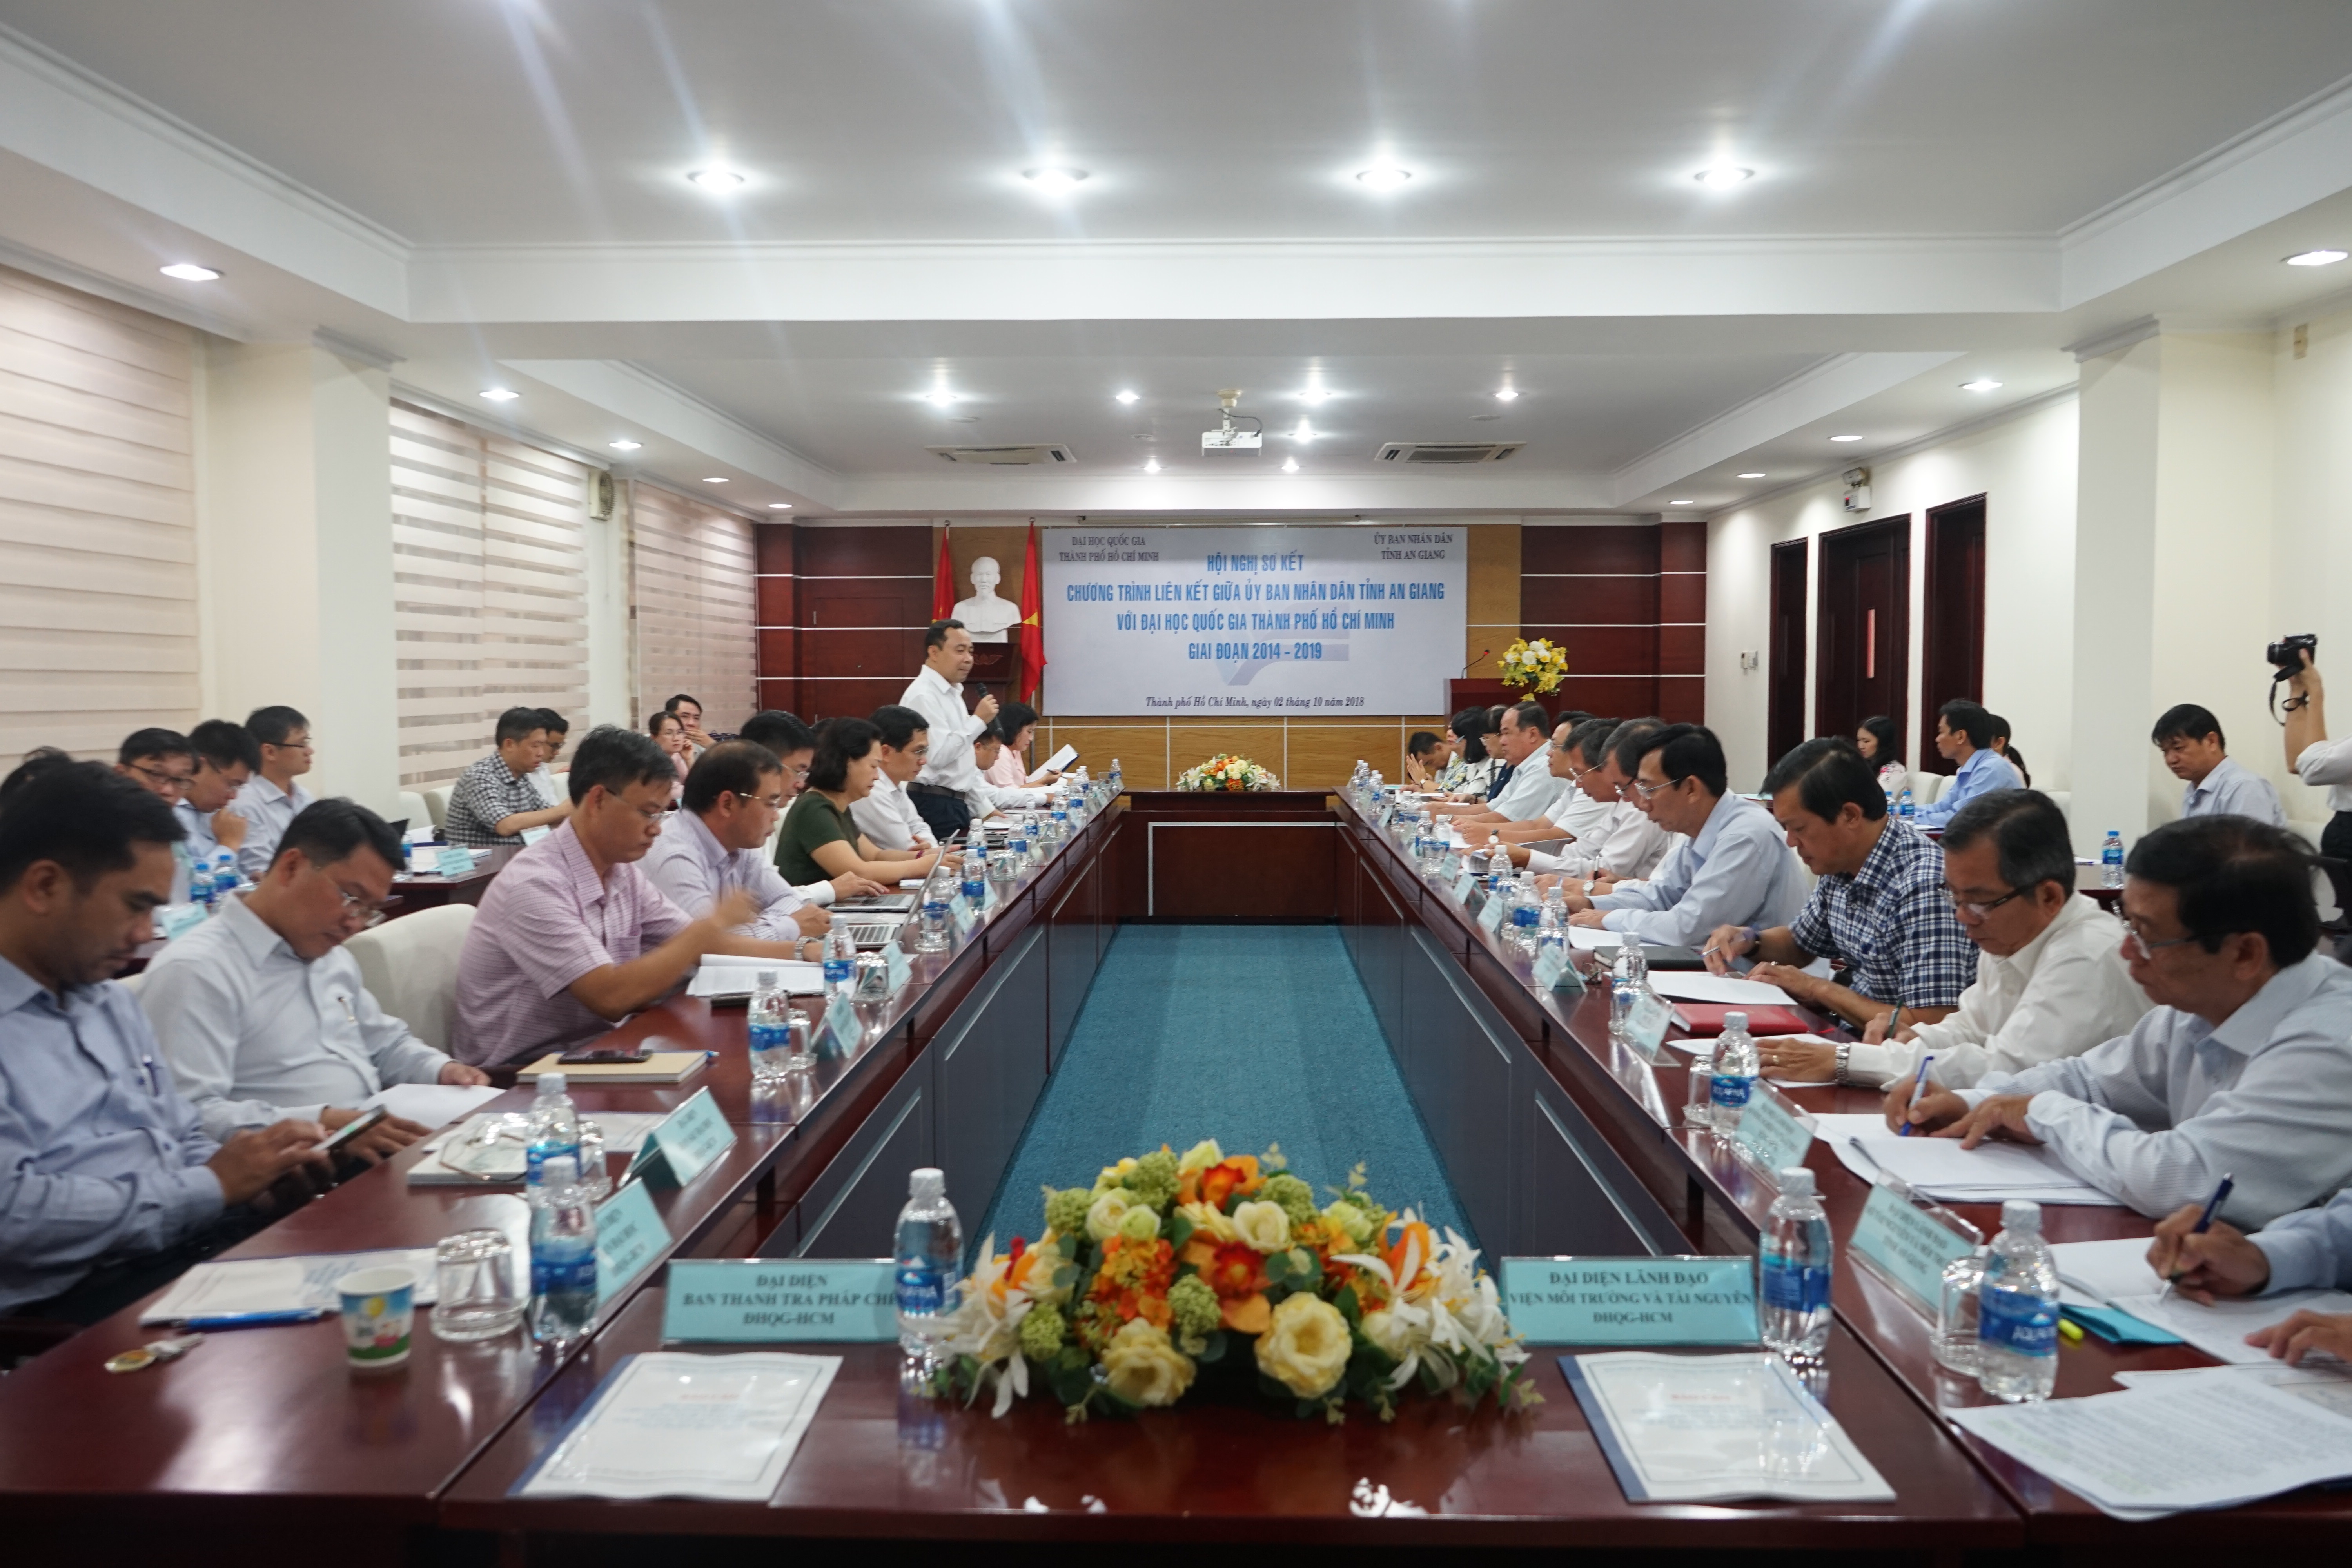 1.	Toàn cảnh hội nghị sơ kết chương trình liên kết giữa UBND tỉnh An Giang và ĐHQG-HCM.